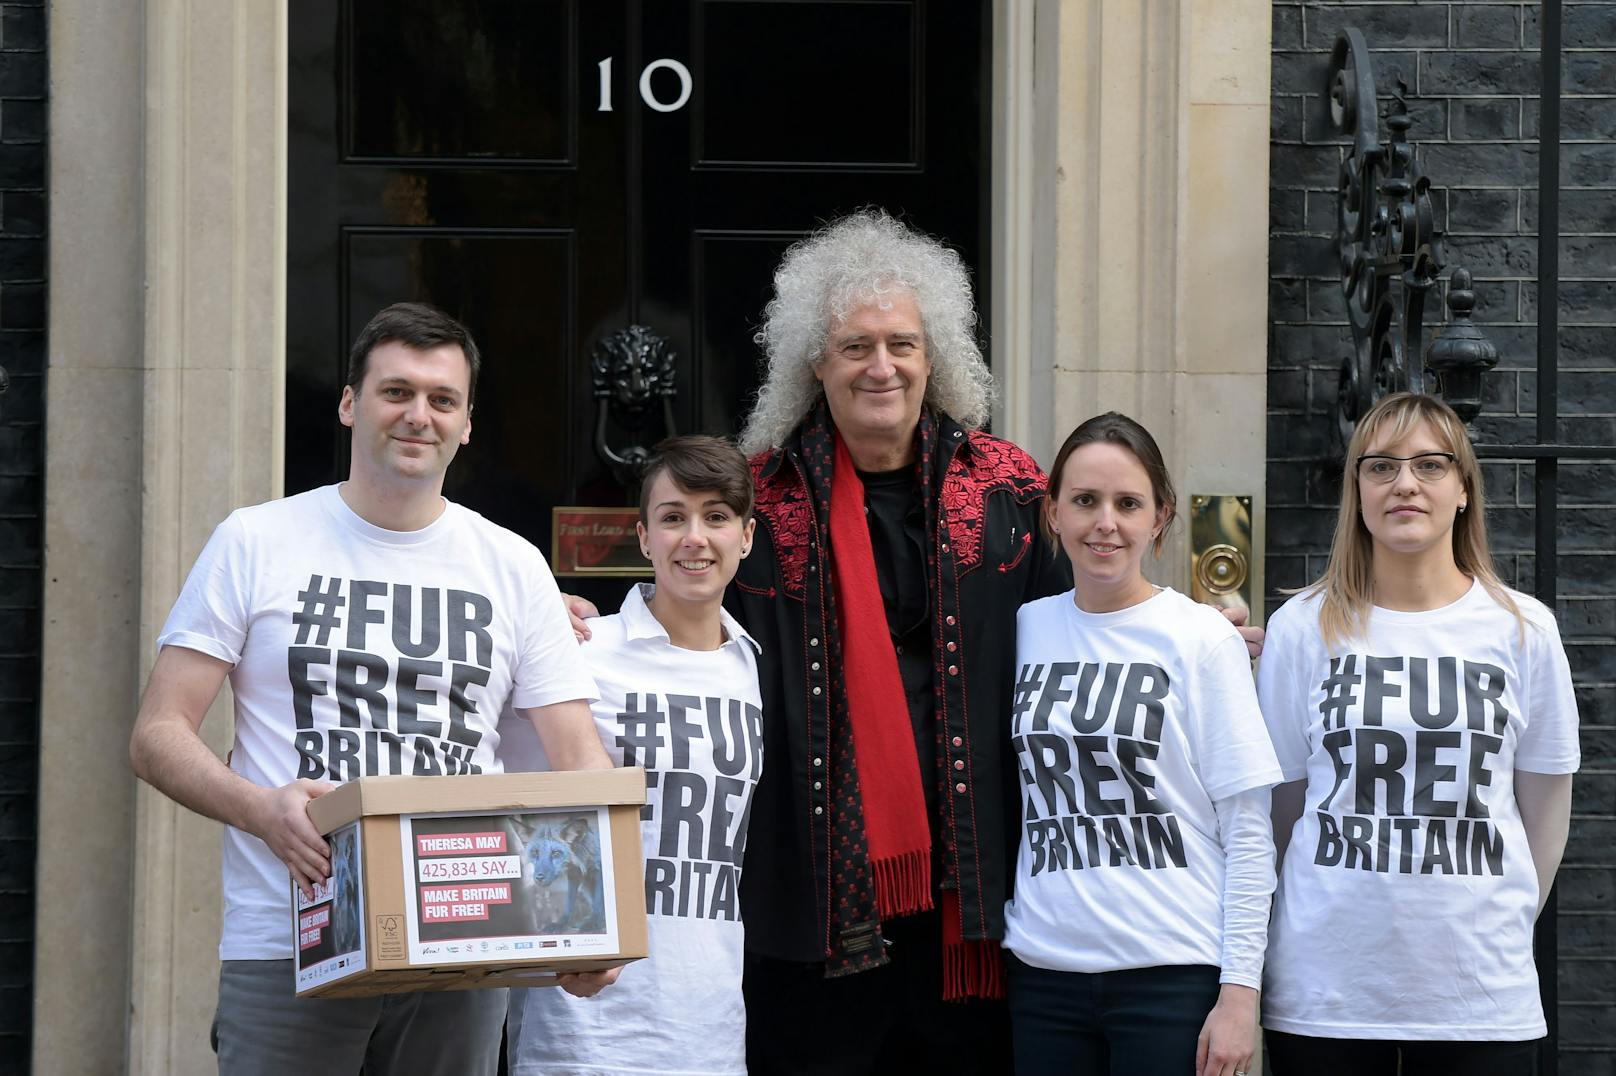 Gitarrist <strong>Brian May</strong> (Queen) lebt vegan und setzt sich seit Jahren aktiv für den Tierschutz ein. 